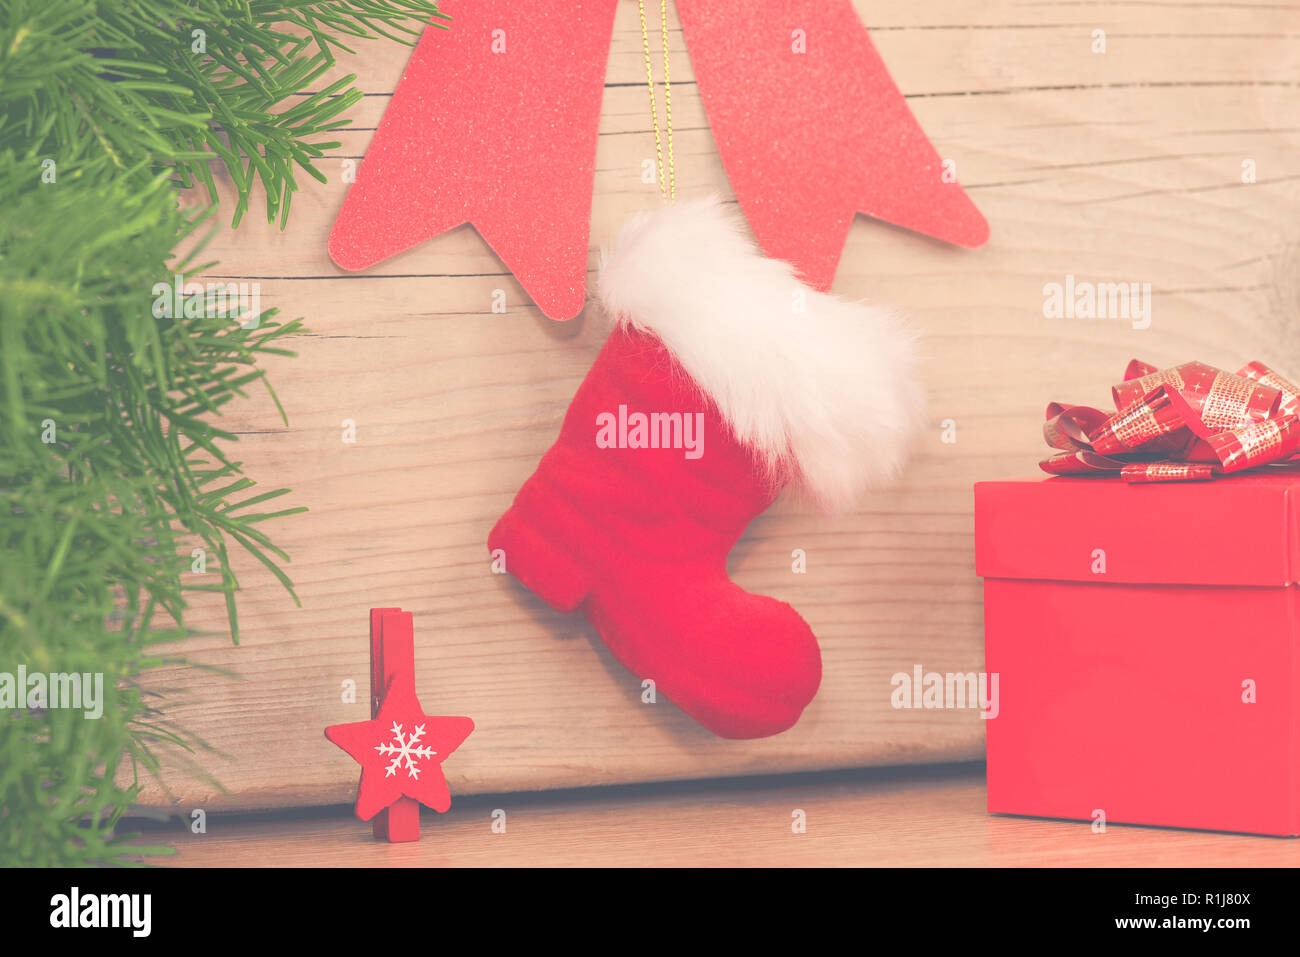 Weihnachten arrangement mit roten Boot-, Geschenk- und Holz- Stern Stockfoto